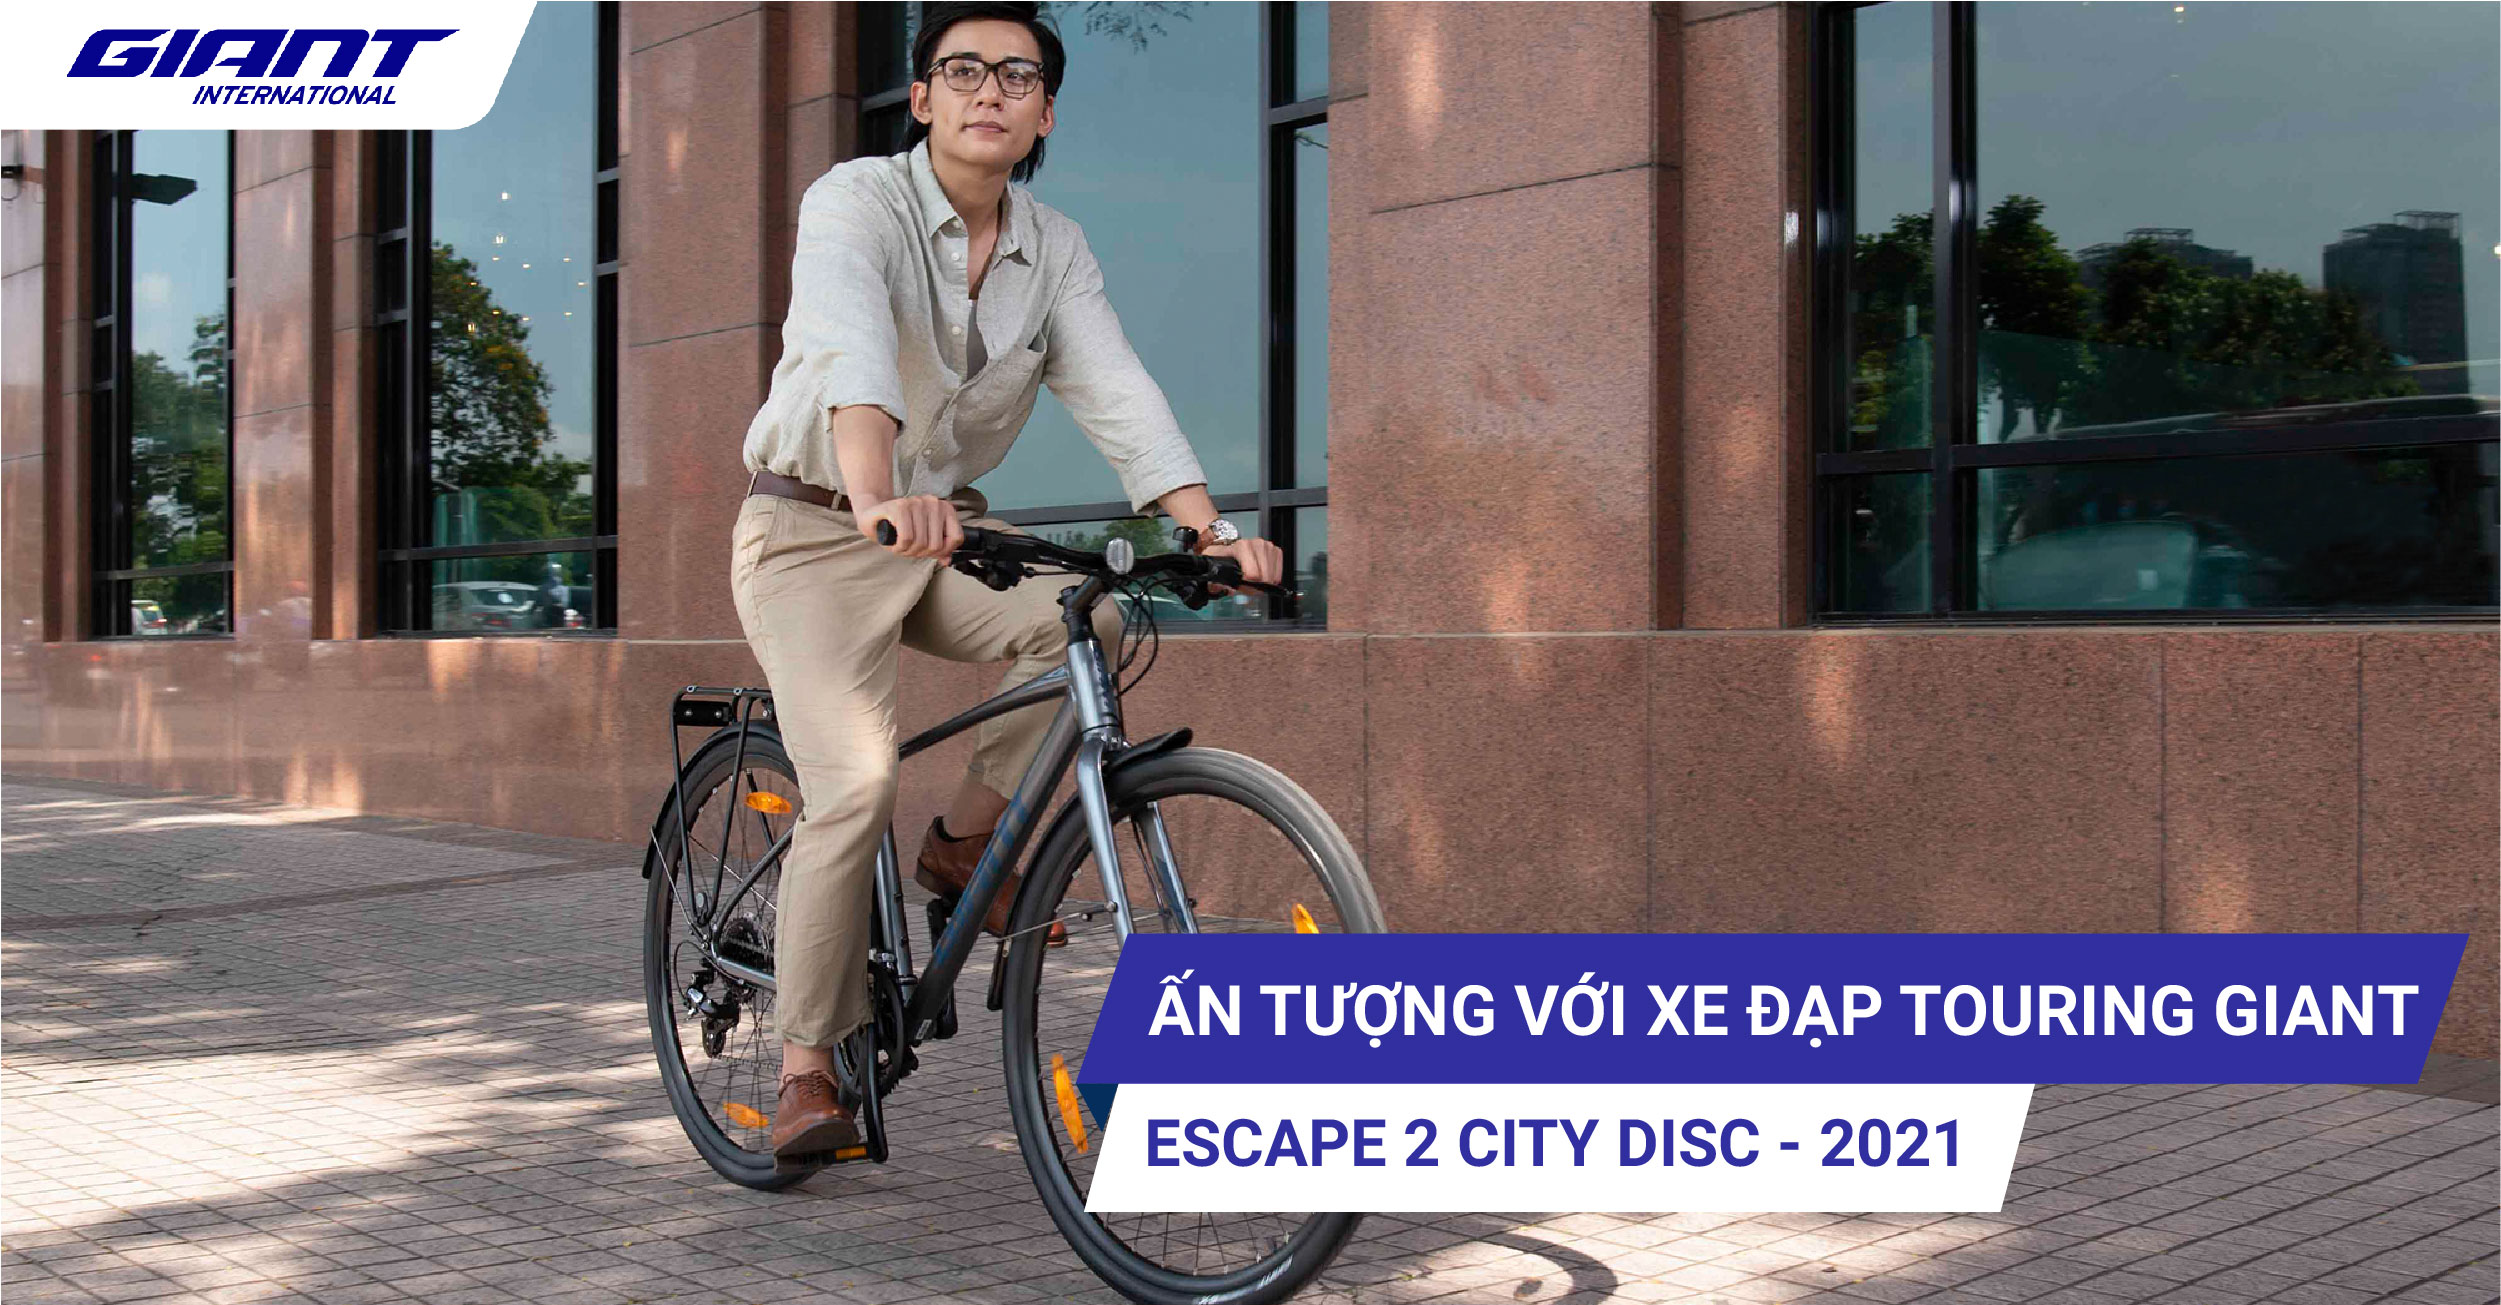 Ấn tượng với xe đạp touring Giant Escape 2 City Disc – 2021